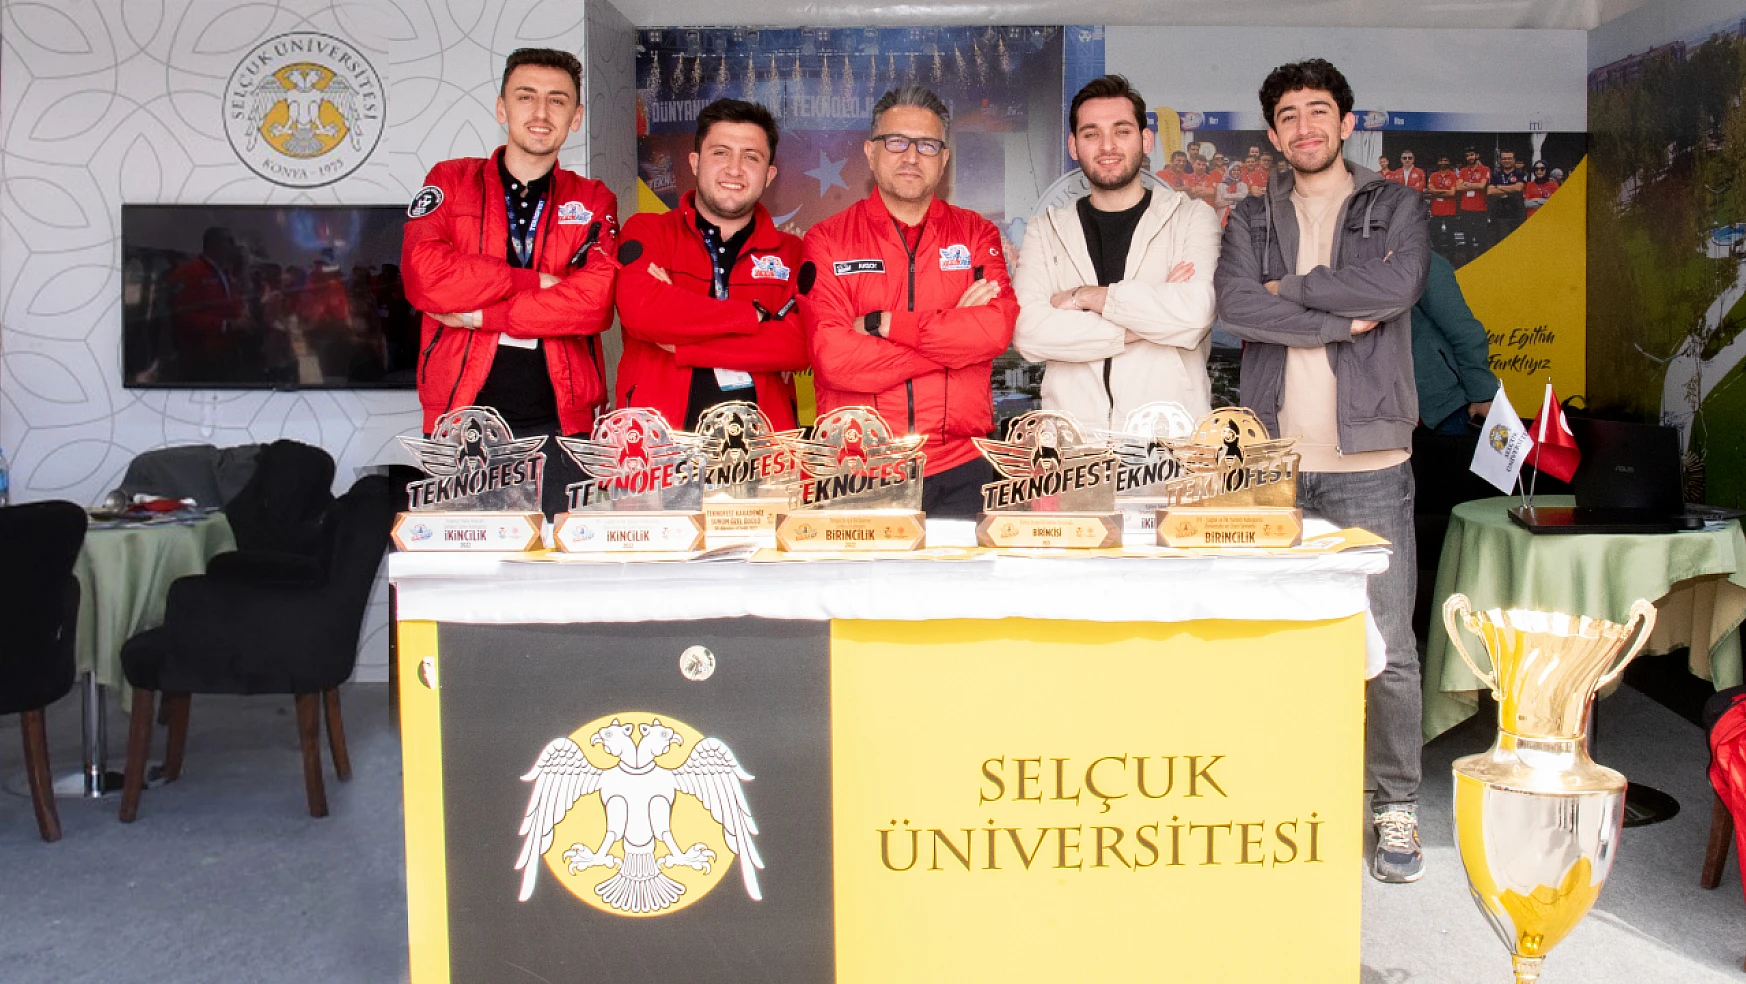 Selçuk Üniversitesi KiDose Takımı, TEKONFEST'te 150 bin lira hibe kazandı